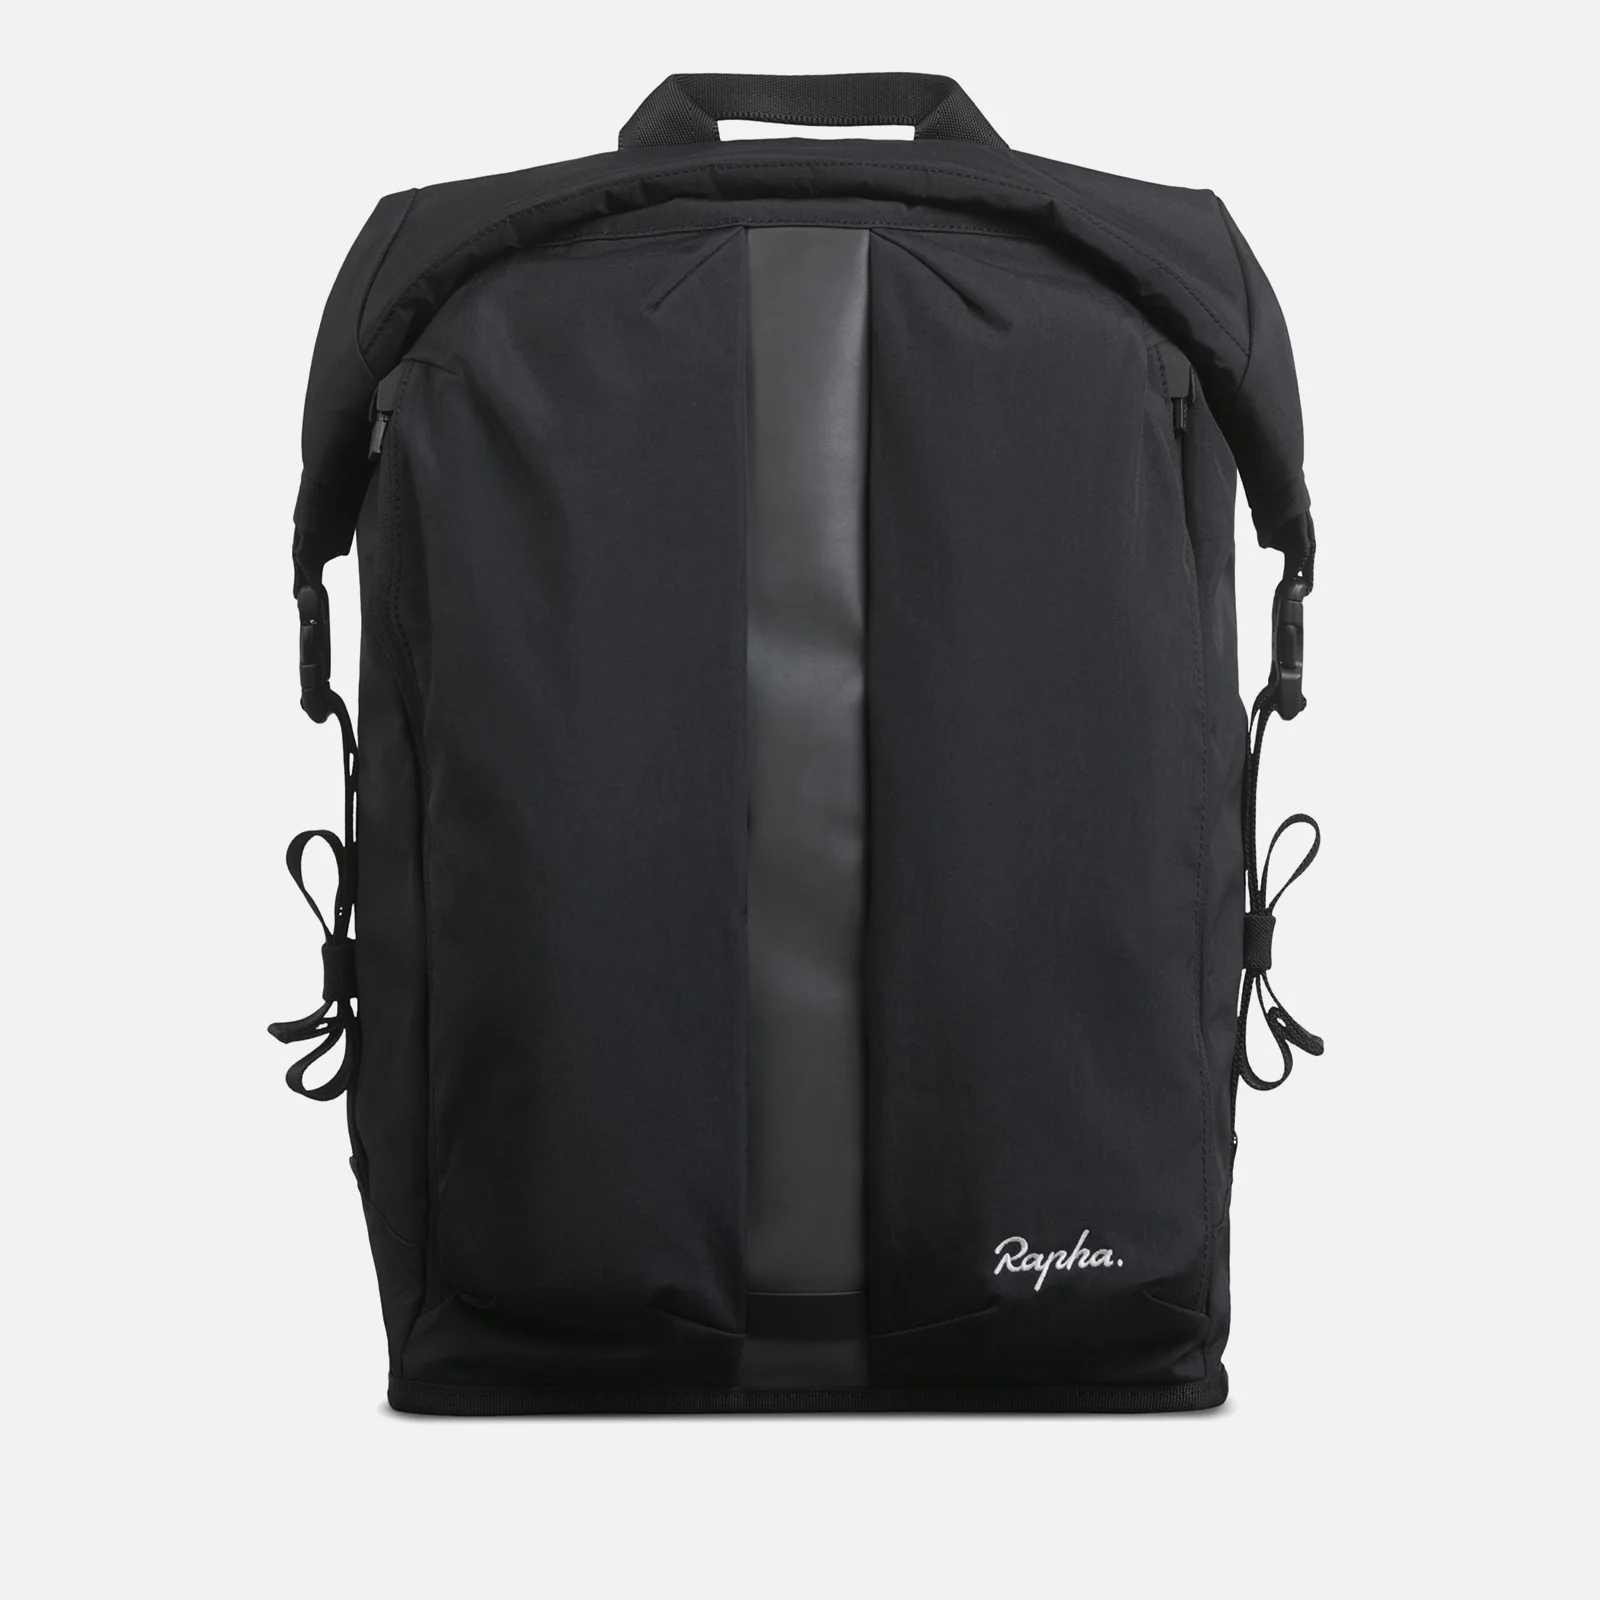 Rapha Waxed Nylon Backpack Image 1